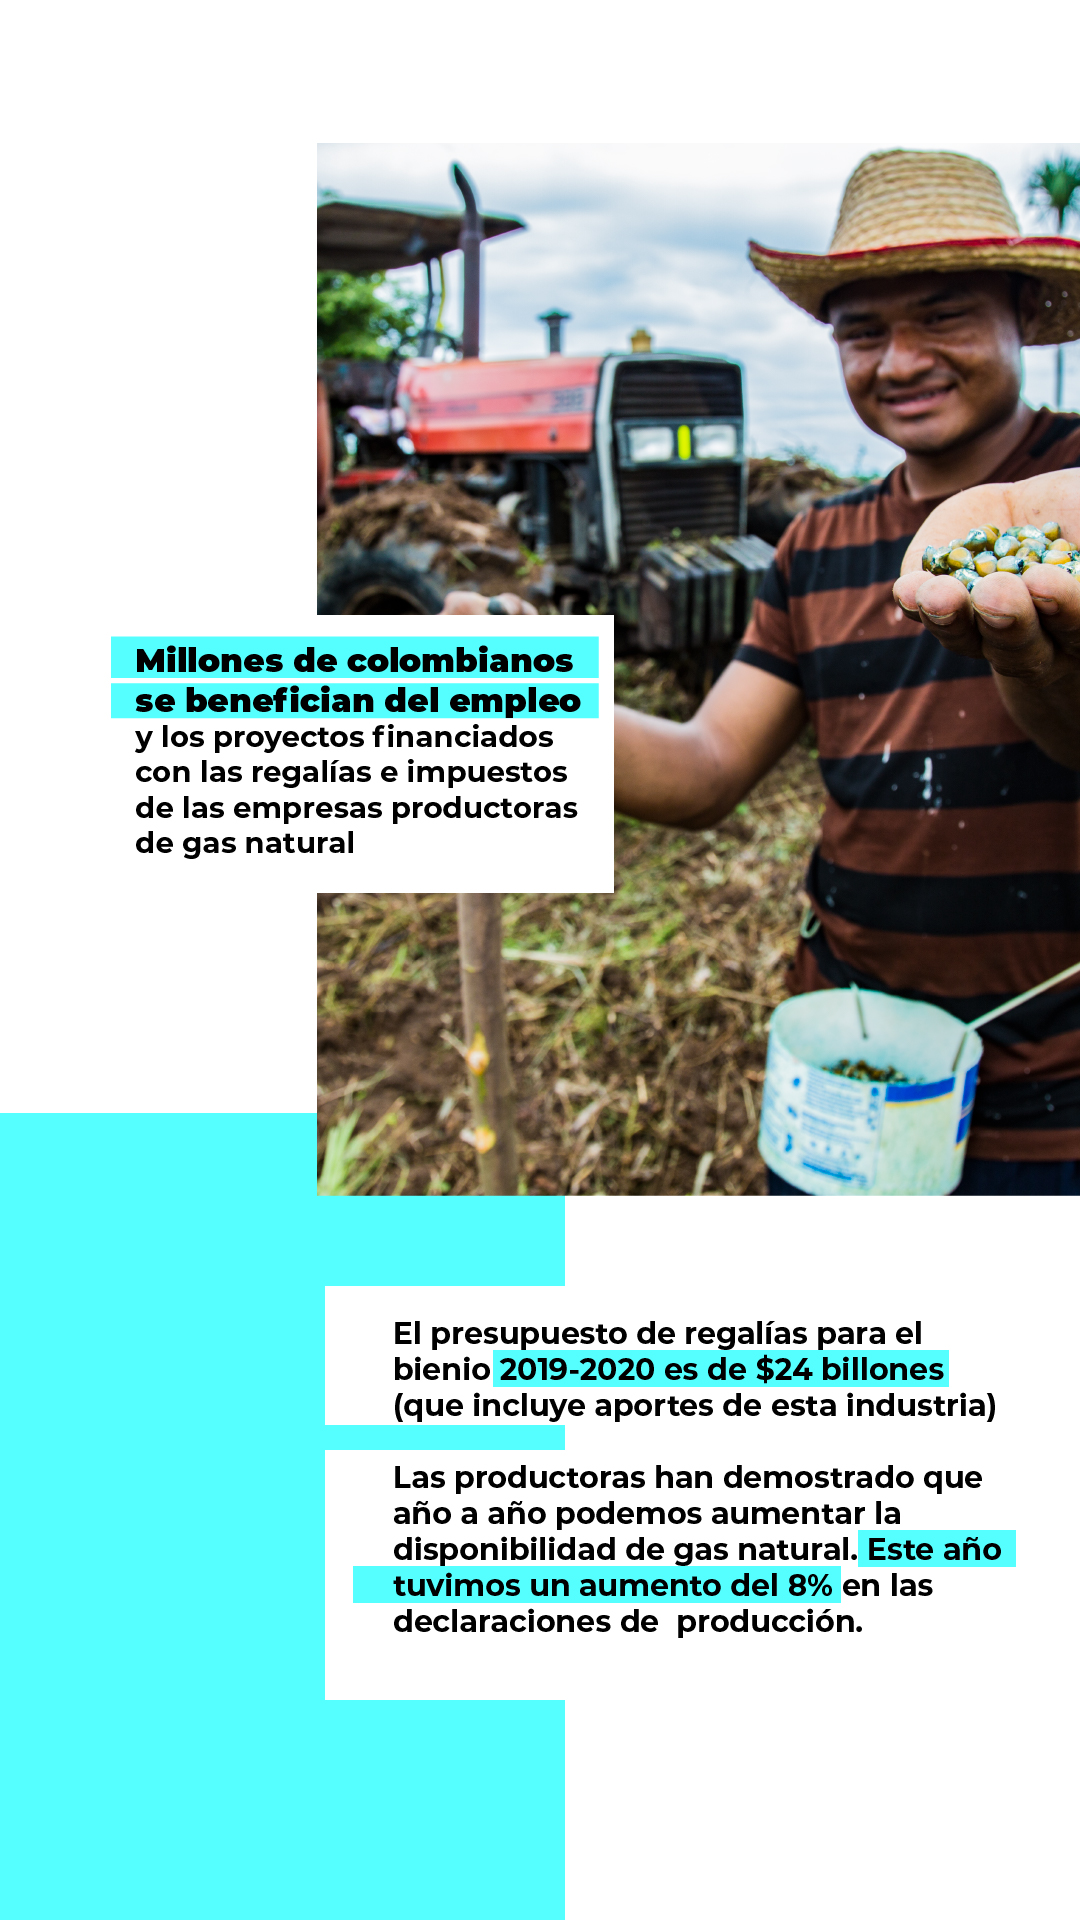 Millones de colombianos se benefician del empleo y los proyectos financiados con las regalías e impuestos de las empresas productoras de gas natural